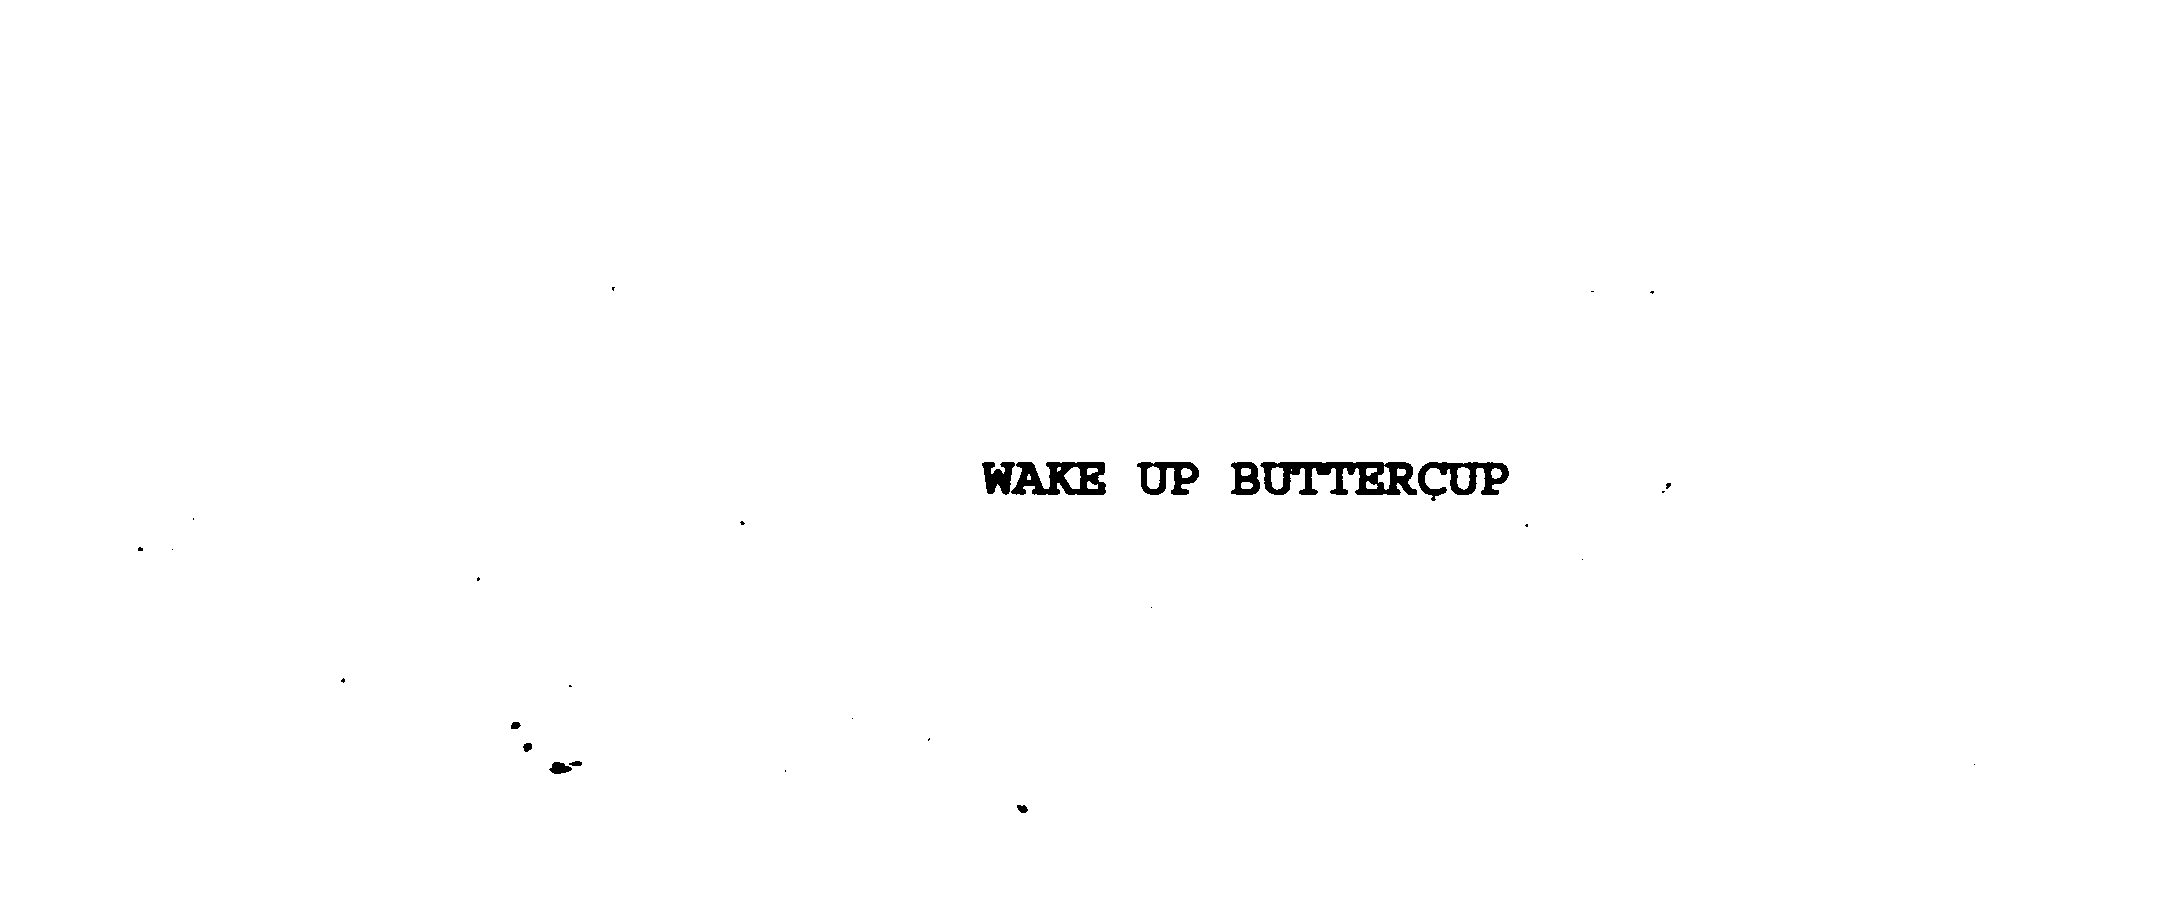  WAKE UP BUTTERCUP